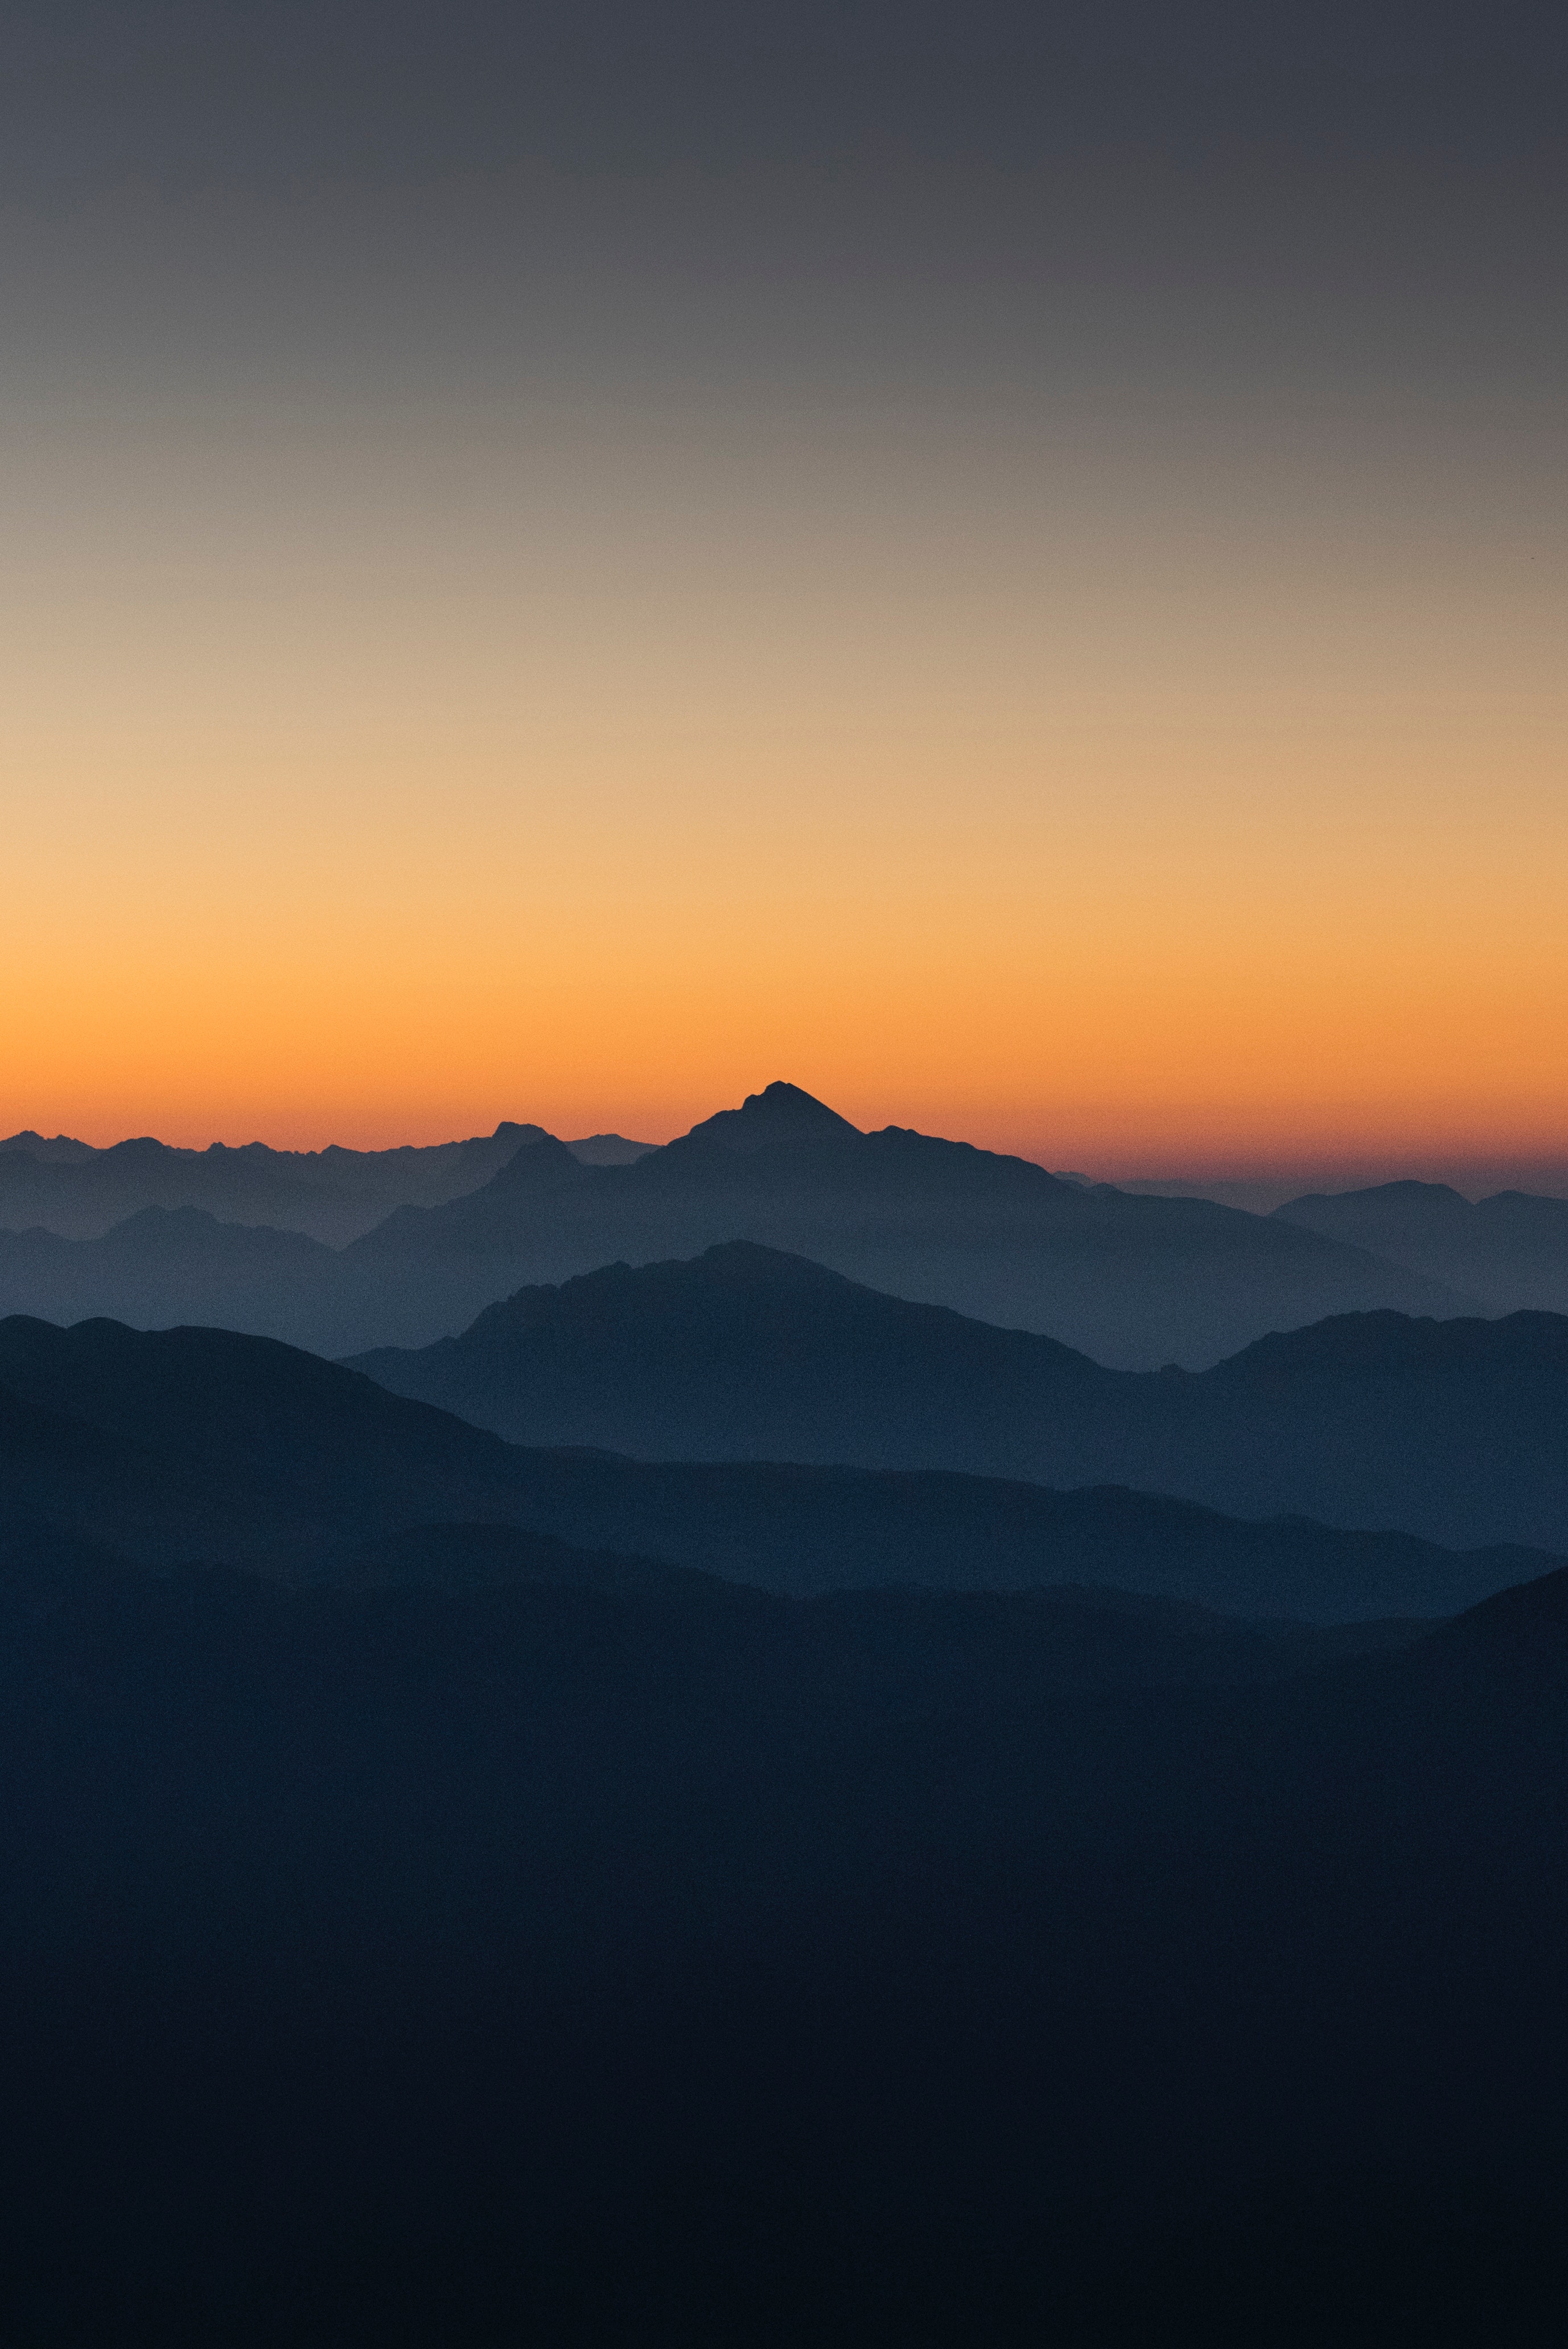 italy, nature, mountains, horizon, fog, silhouettes, outlines Free Stock Photo